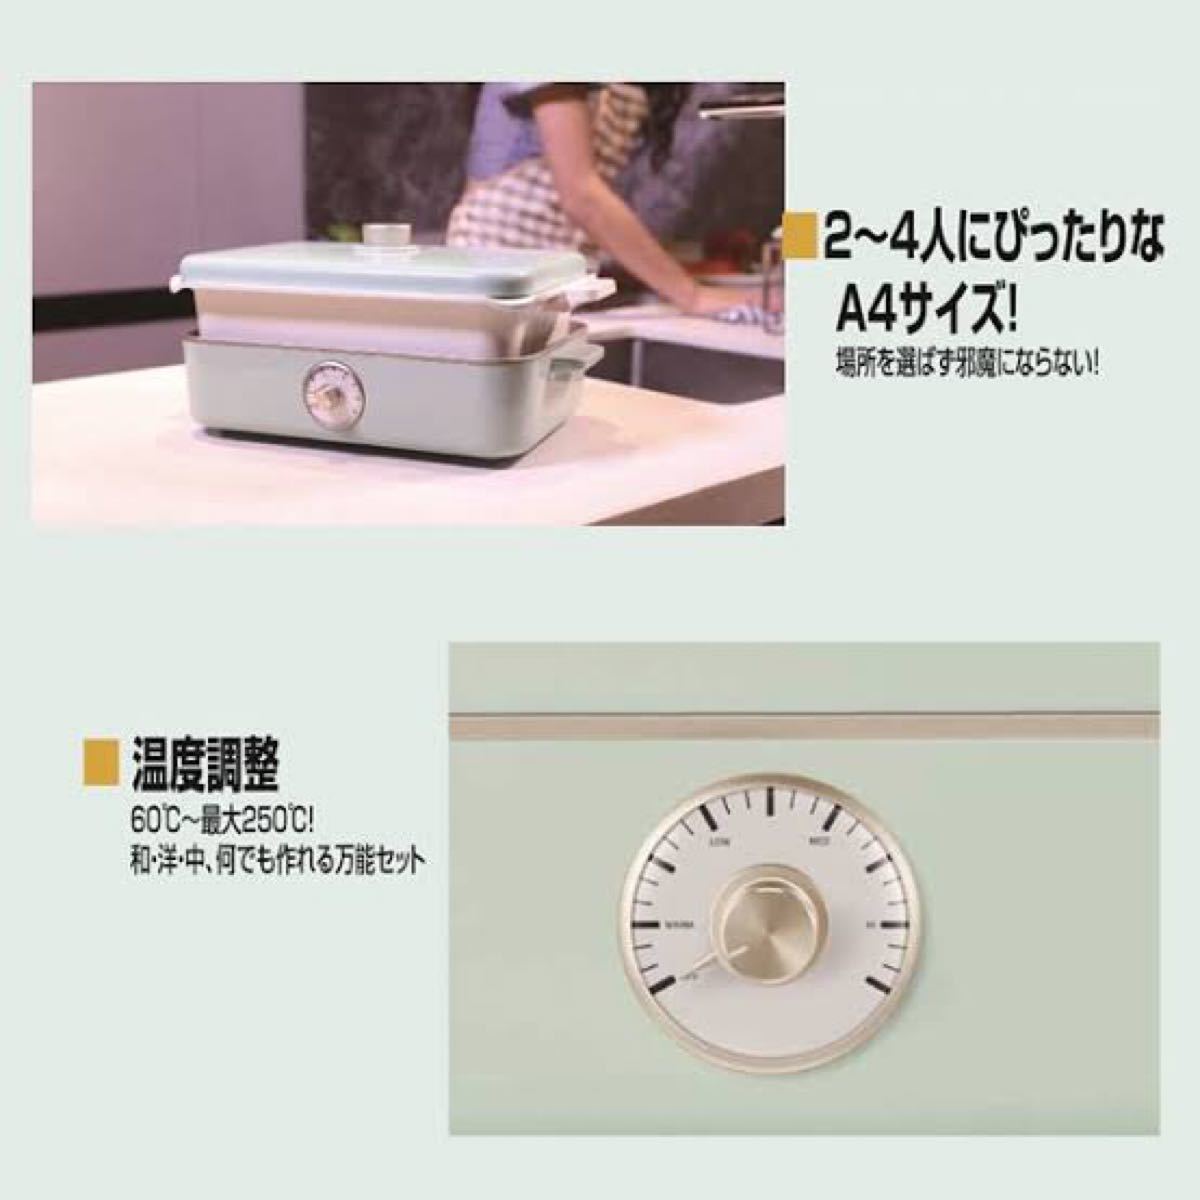 【新品】鍋料理もOK! マルチホットプレート ピンク